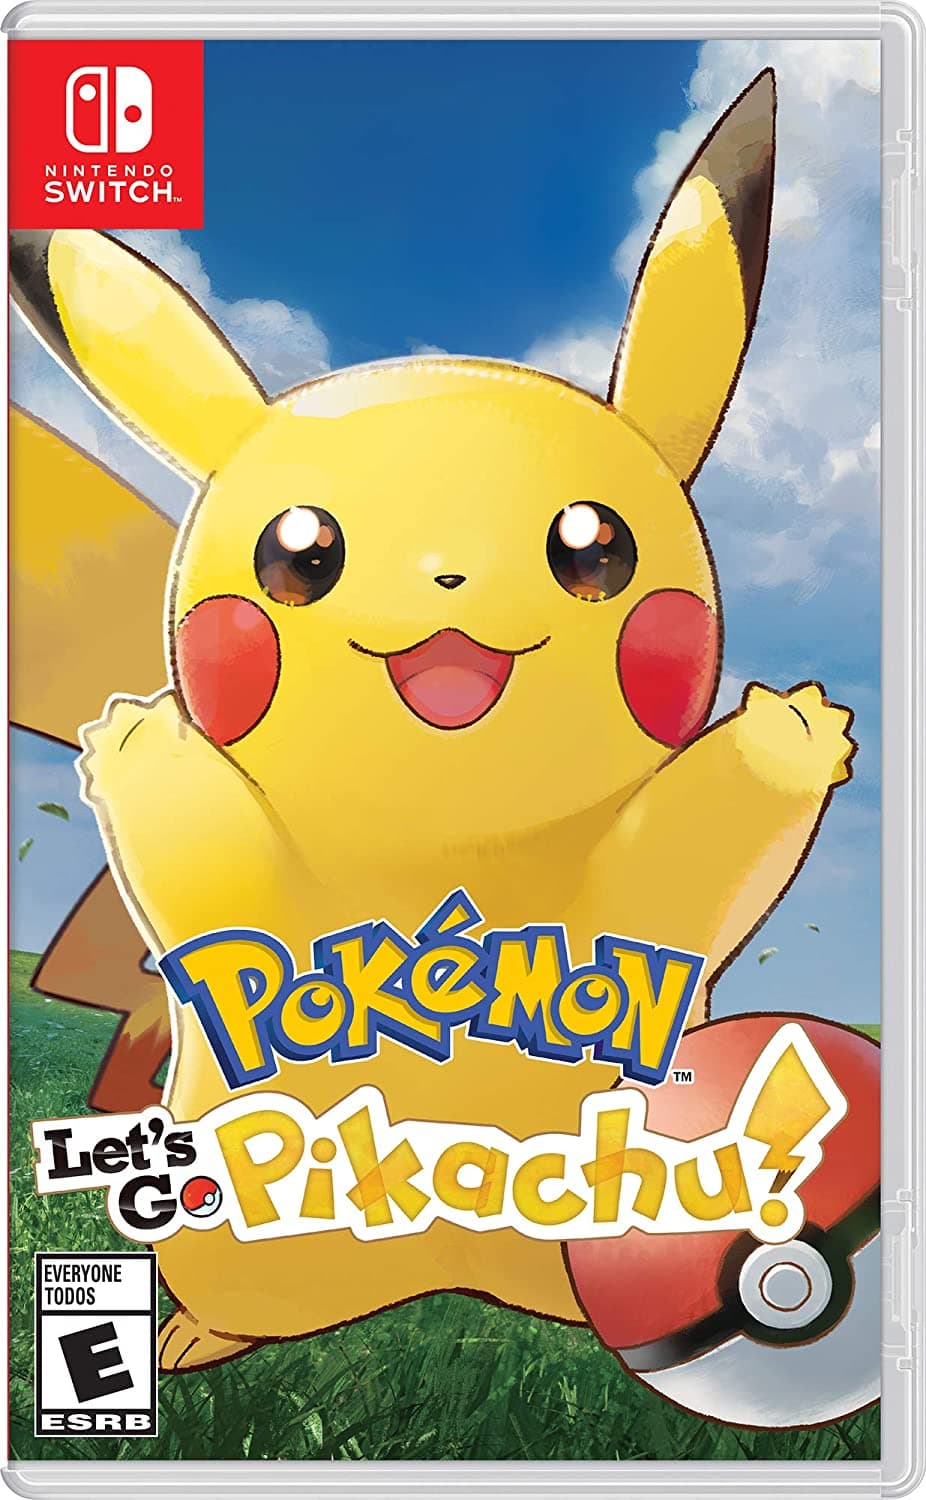 Pokémon Let's Go Pikachu for Nintendo Switch.